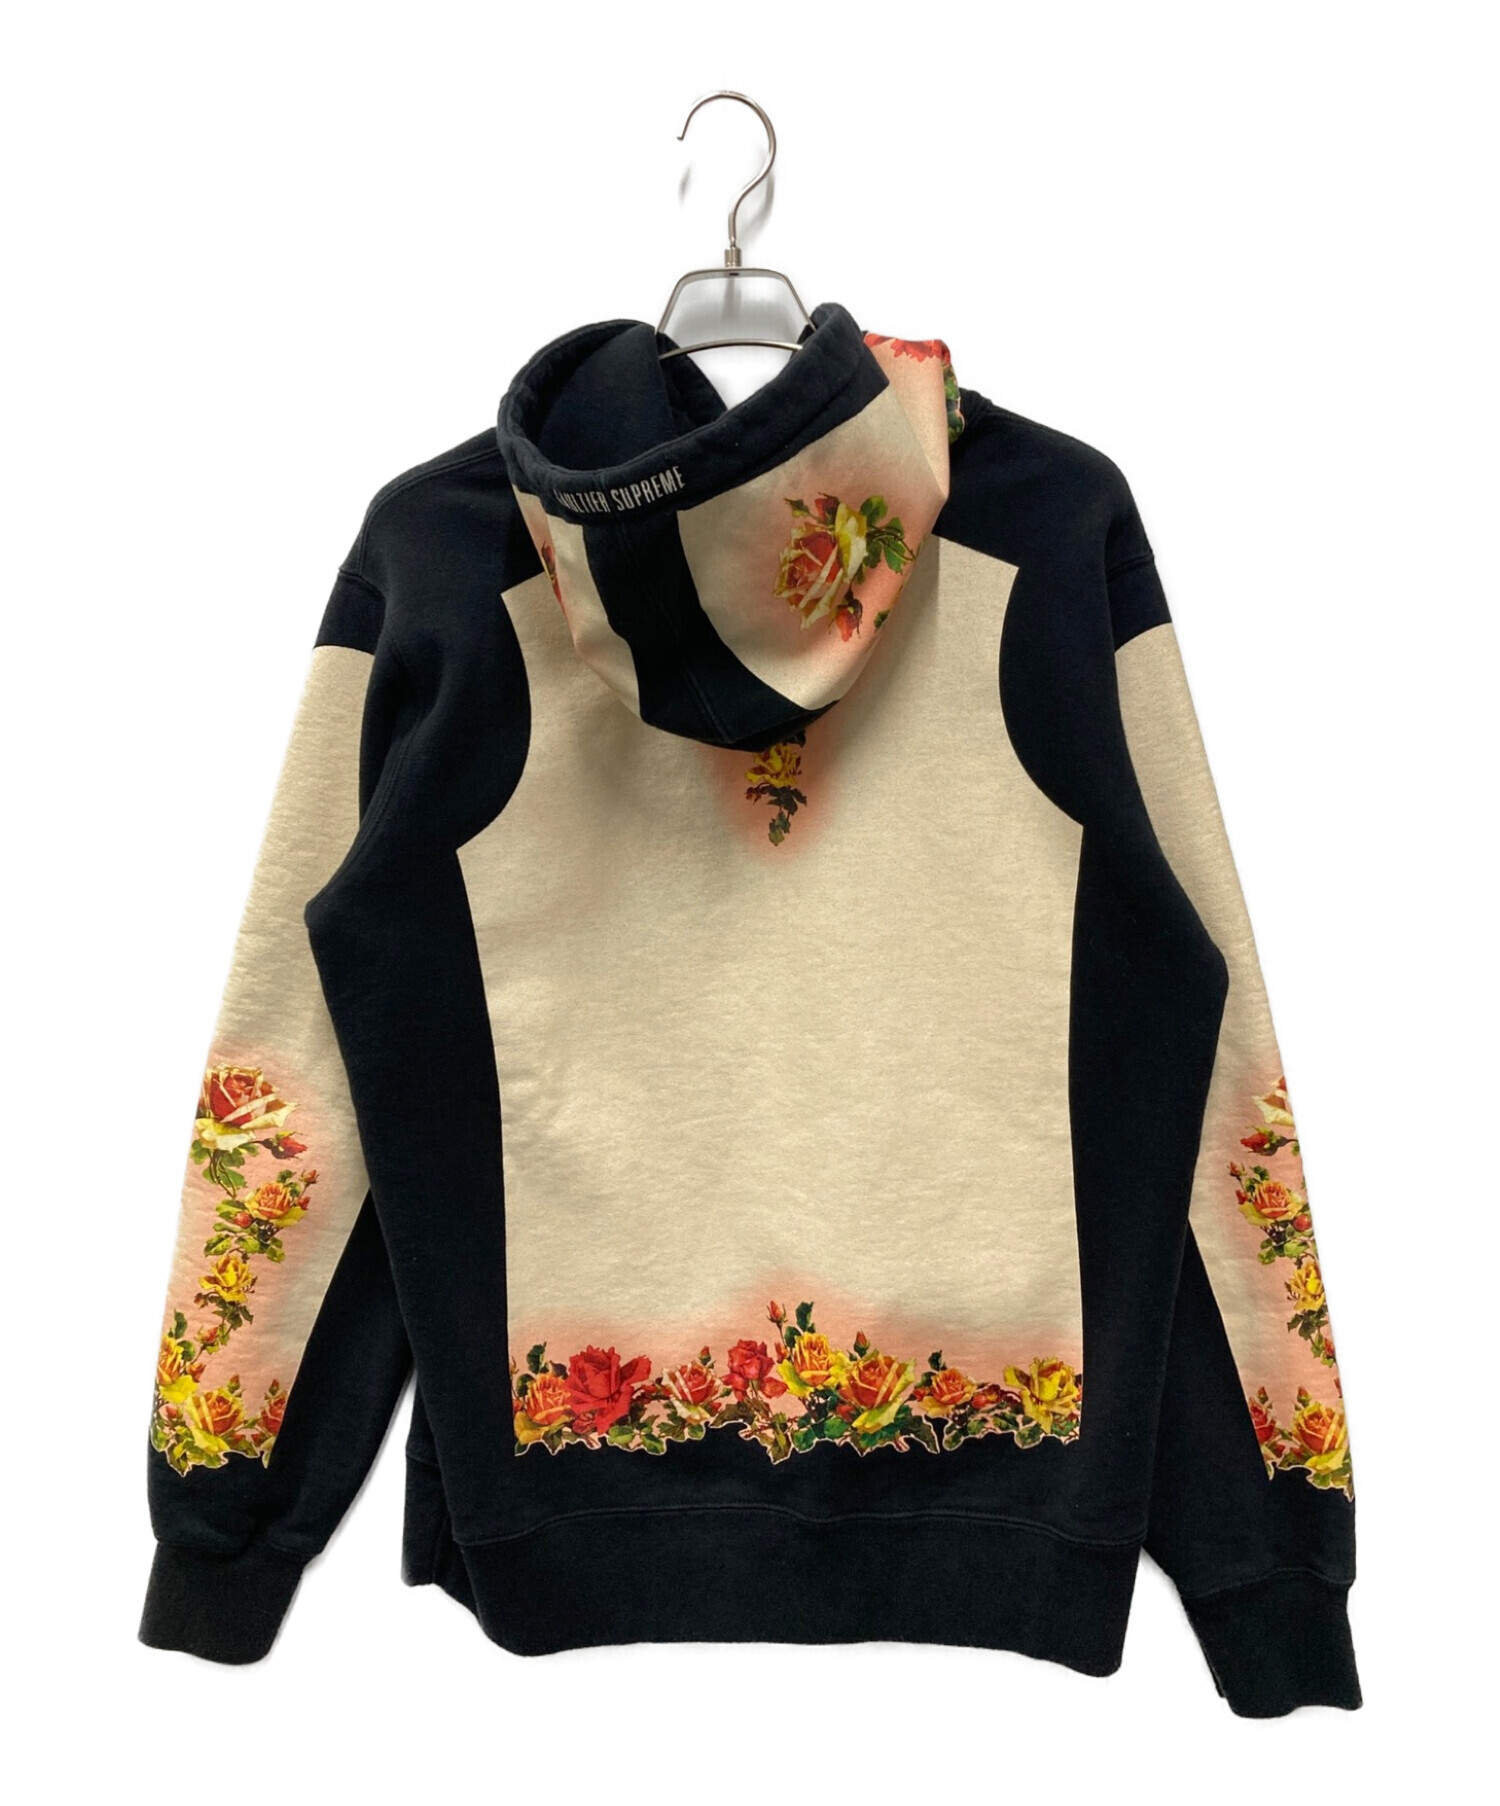 SUPREME (シュプリーム) Jean Paul GAULTIER (ジャンポールゴルチェ) Floral Print Hooded  Sweatshirt ブラック×イエロー サイズ:M